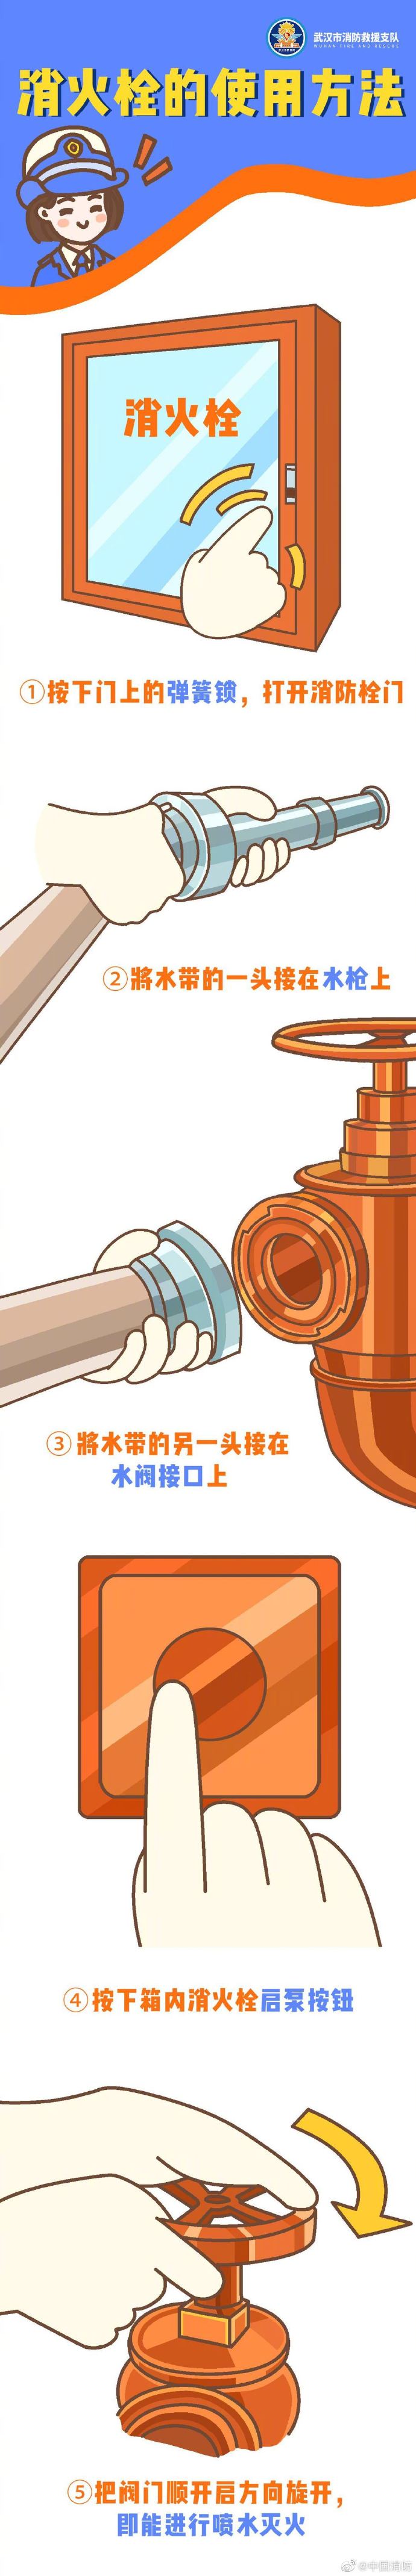 消防栓的使用方法 消防器使用方法步骤